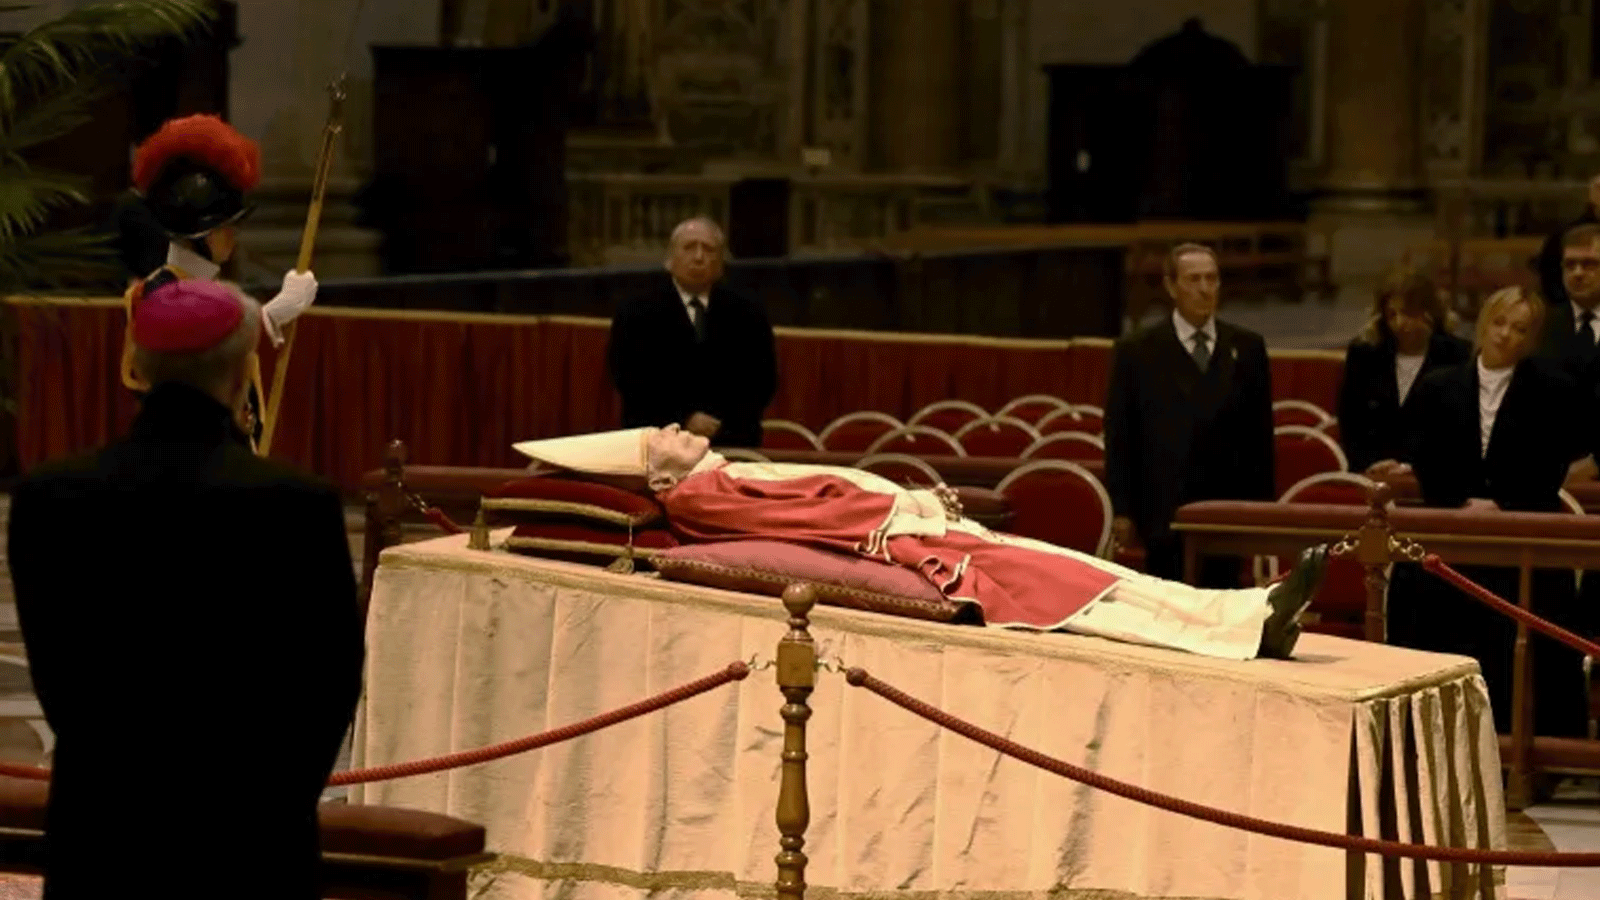 آلاف الكاثوليك يعربون عن احترامهم للبابا السابق بنديكتوس السادس عشر في الفاتيكان، حيث يسجّى جثمانه لثلاثة أيام في كنيسة القديس بطرس قبل جنازته.